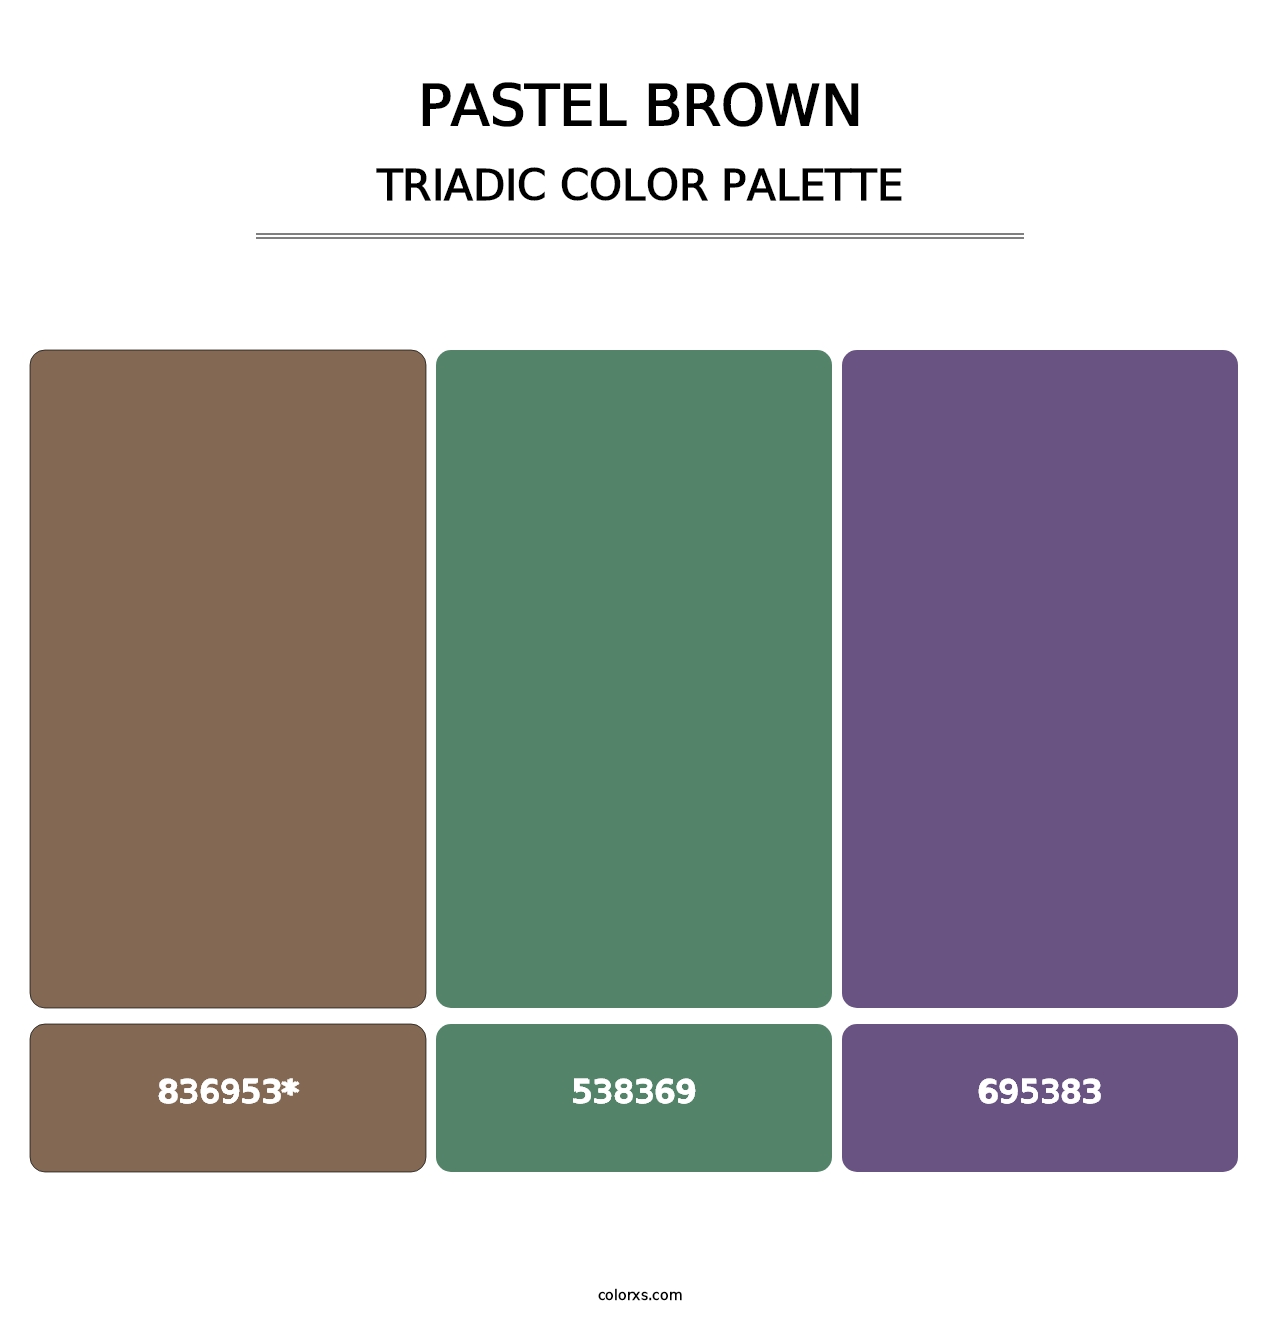 Pastel Brown - Triadic Color Palette